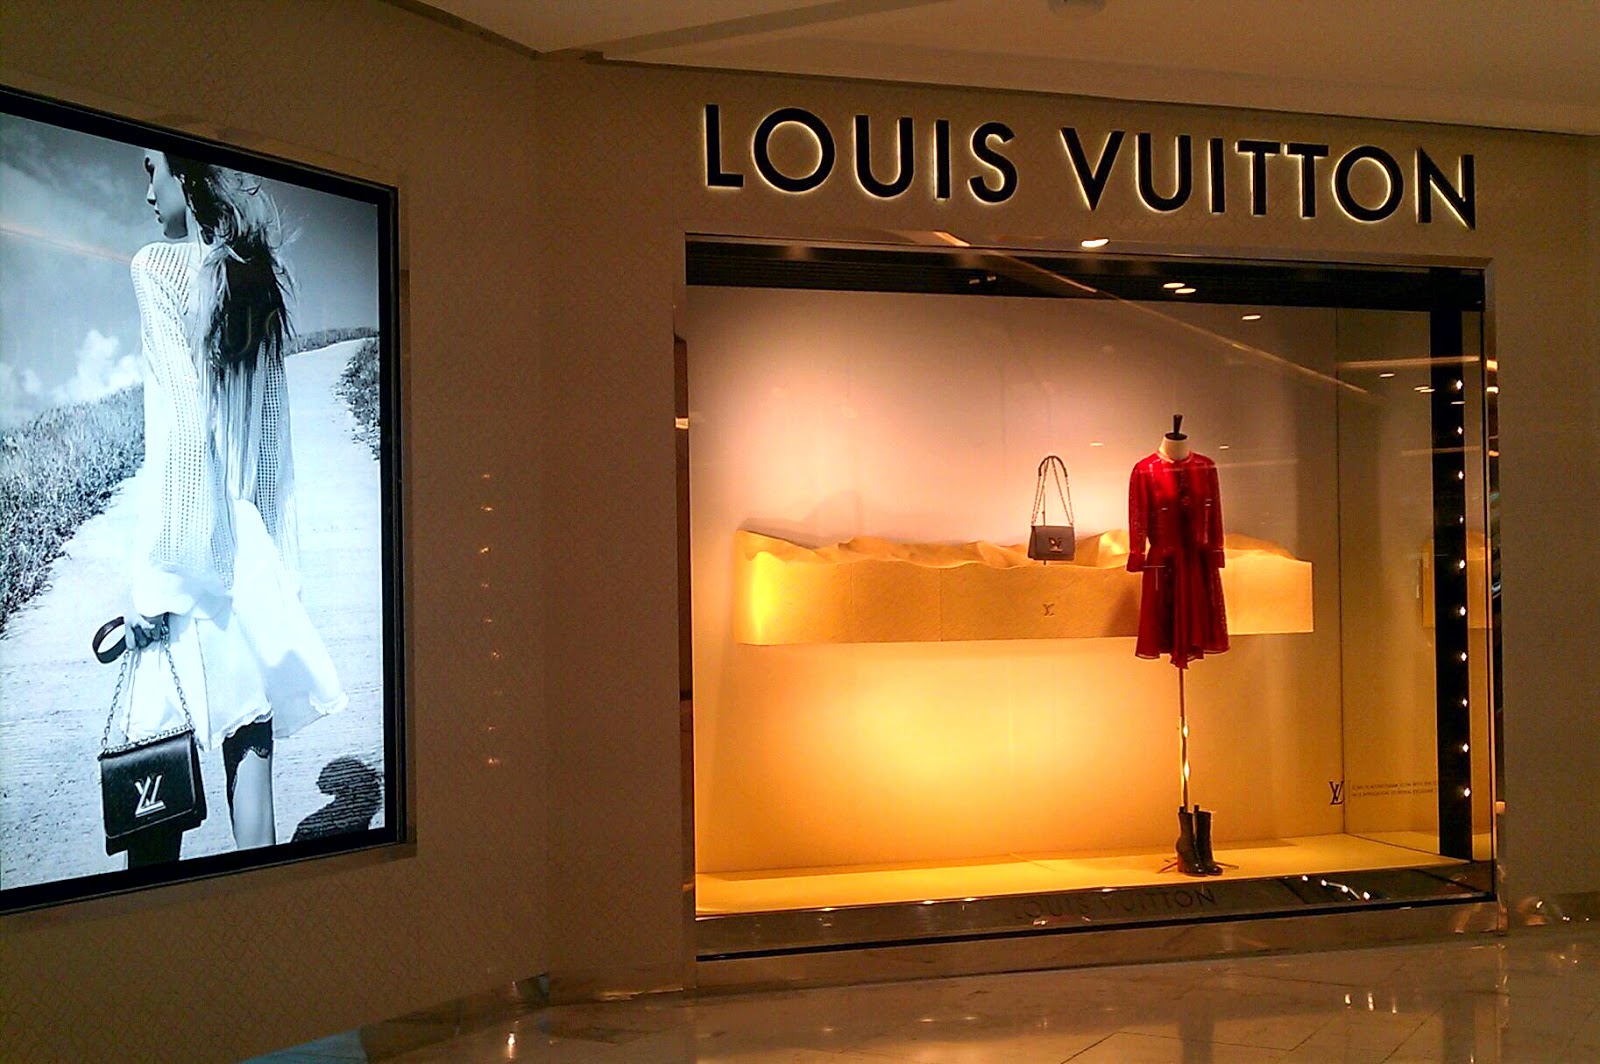 Louis Vuitton Bangkok Emporium Store in Bangkok, Thailand